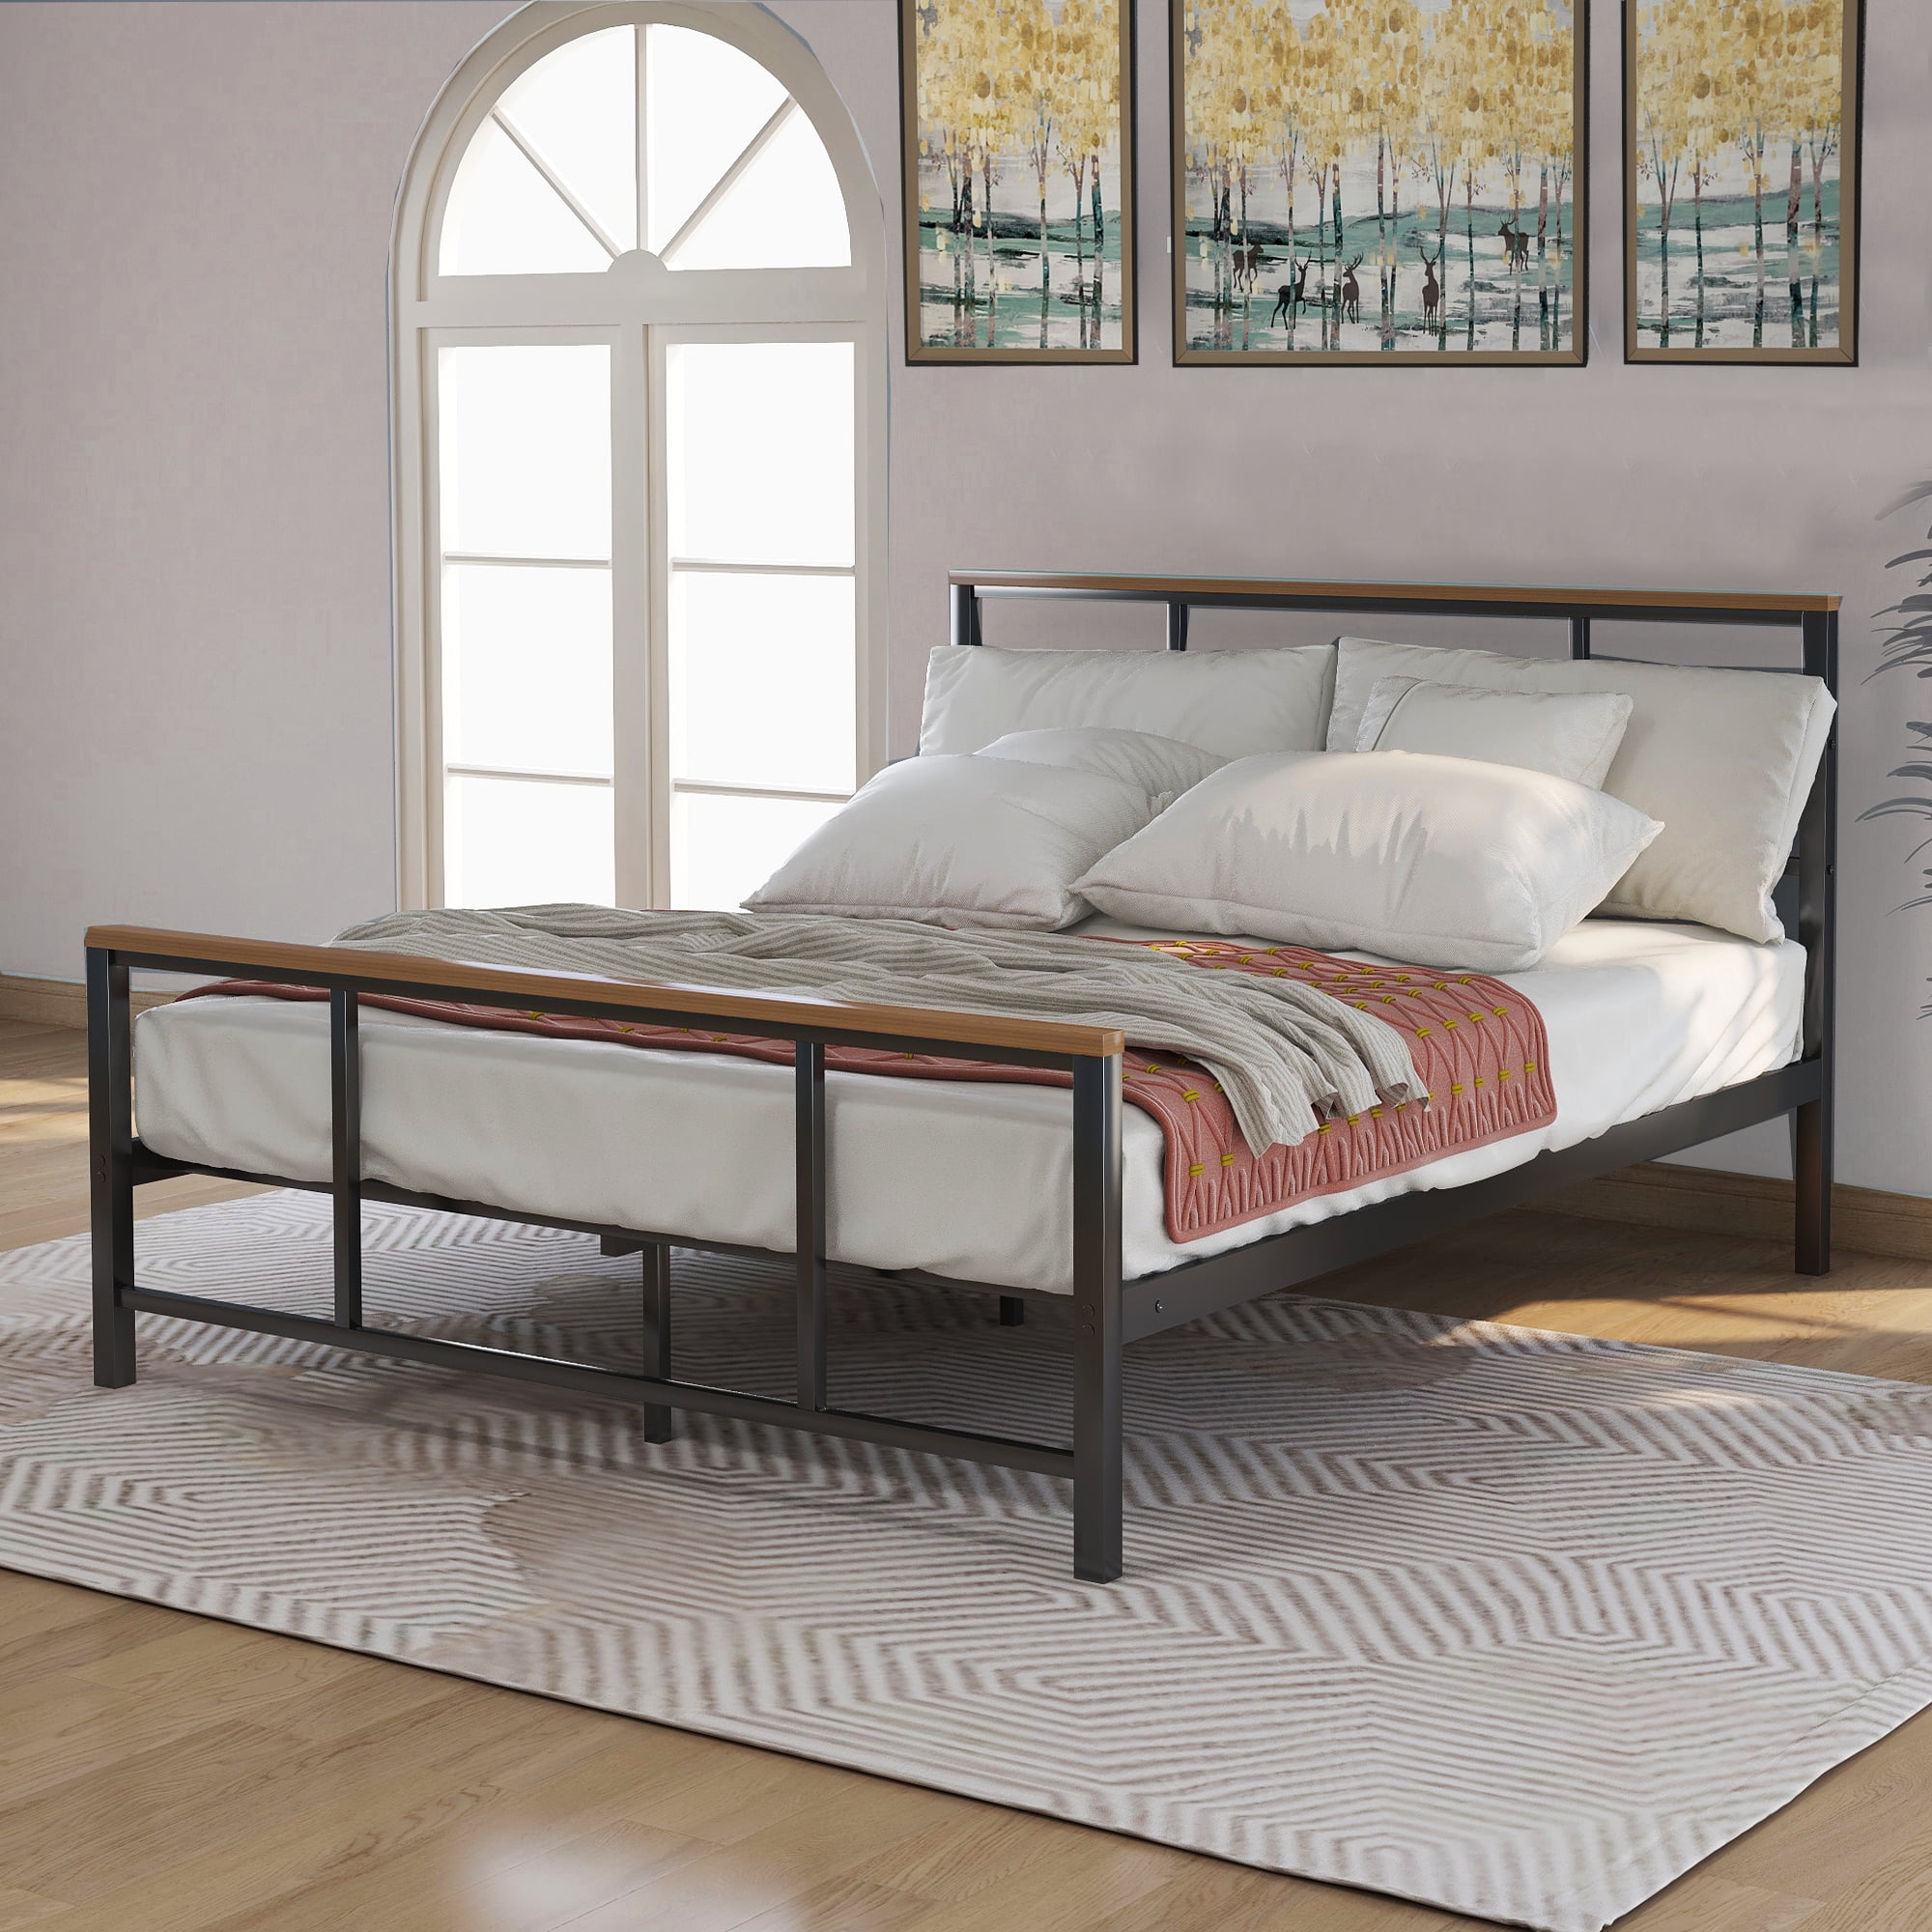 Bed Frame Bedroom Furniture, Full Size Bed Frame No Box Spring